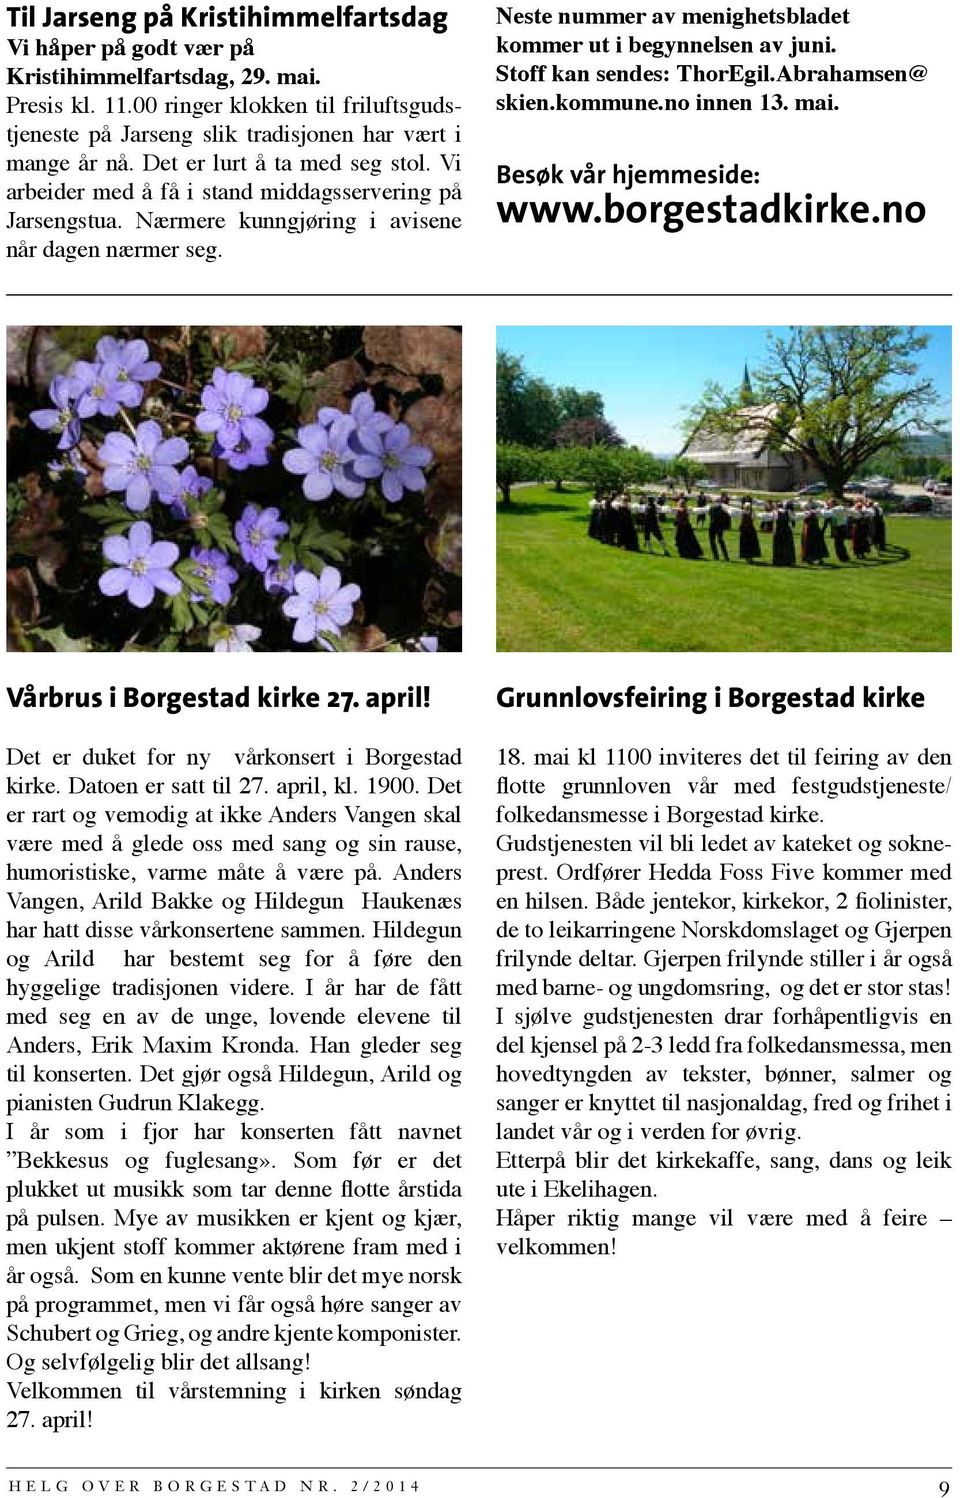 Neste nummer av menighetsbladet kommer ut i begynnelsen av juni. Stoff kan sendes: ThorEgil.Abrahamsen@ skien.kommune.no innen 13. mai. Besøk vår hjemmeside: www.borgestadkirke.